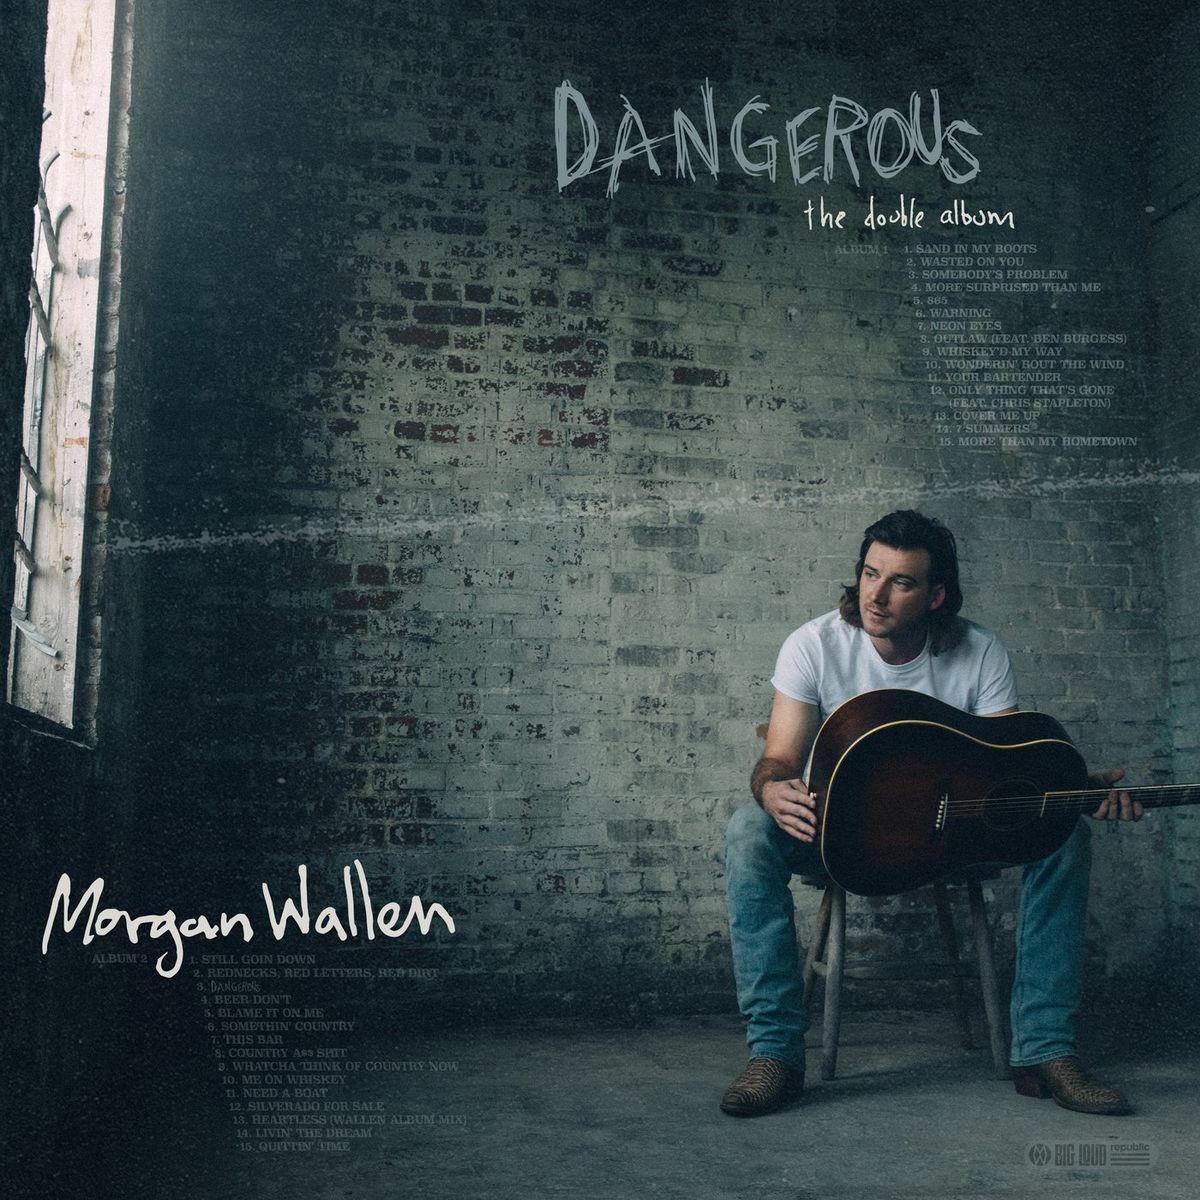 Morgan Wallen - Somebody's Problem